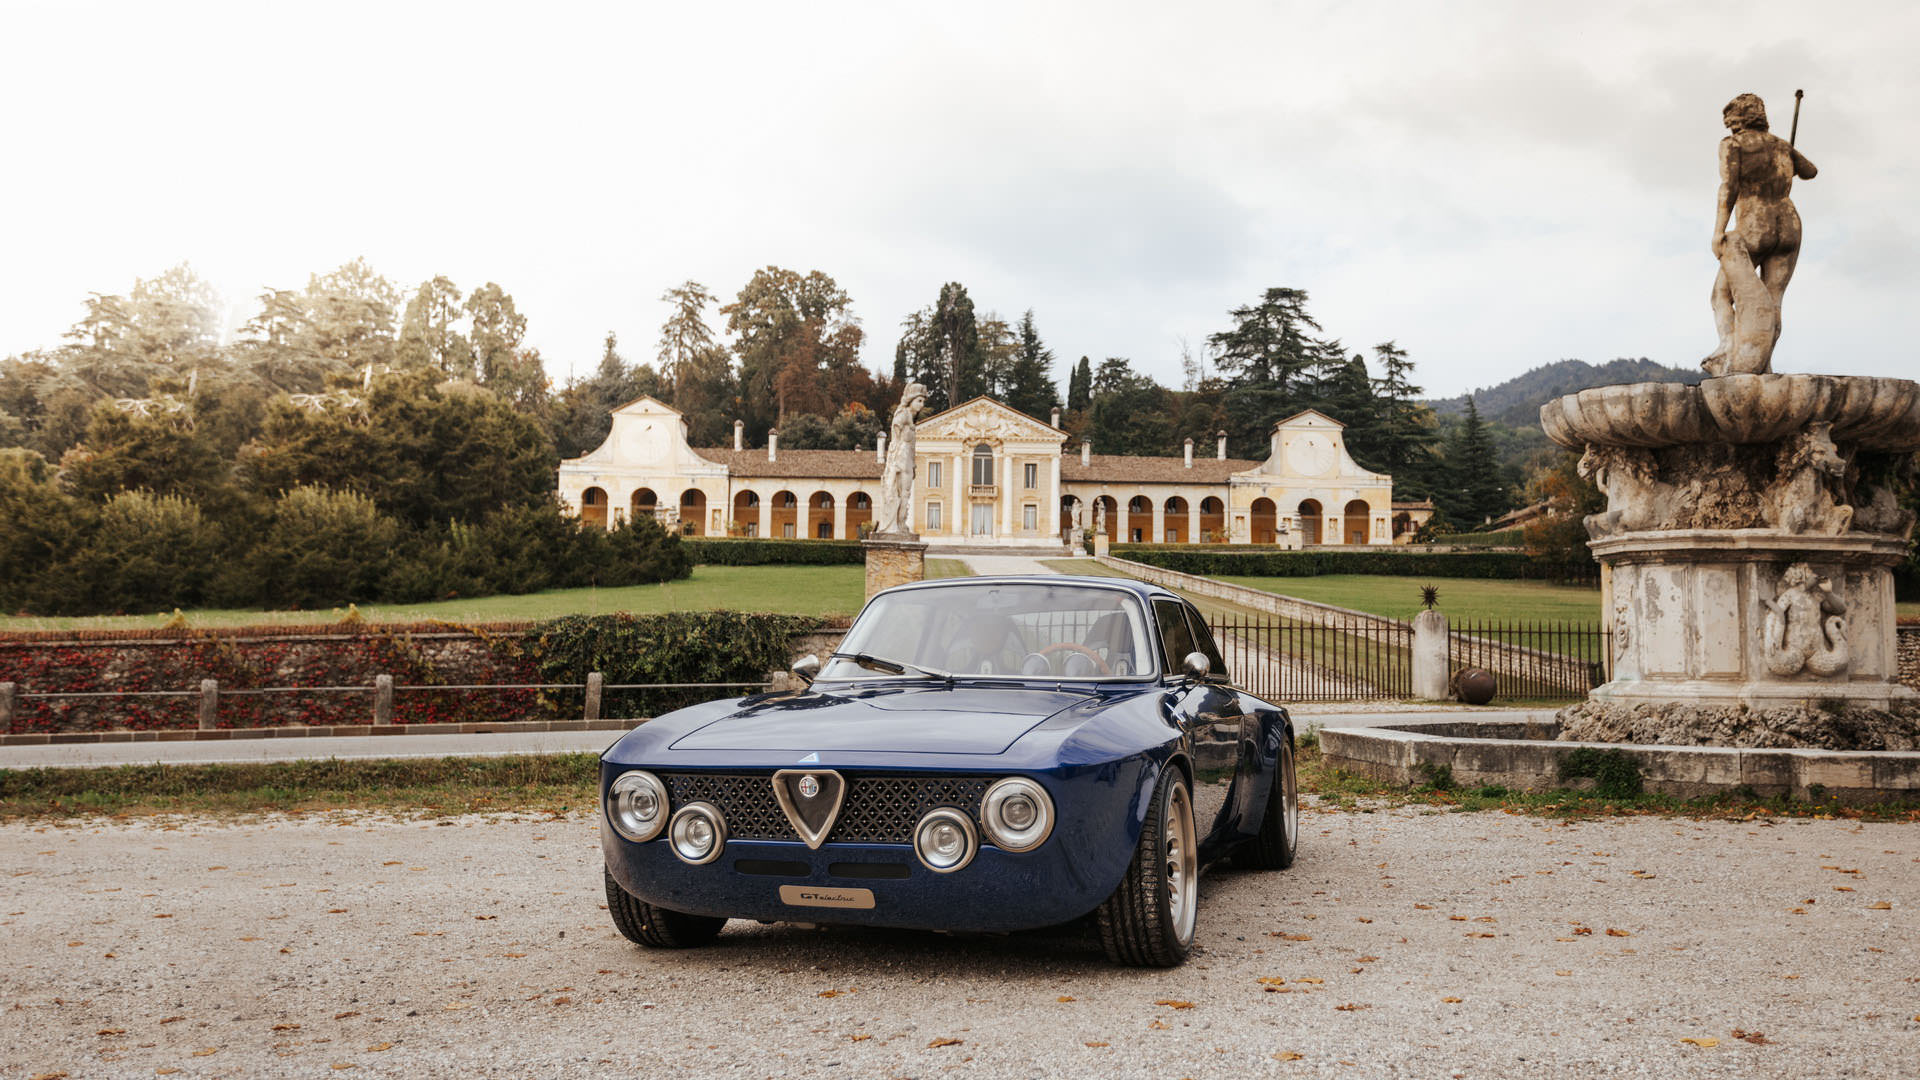 نمای جلو خودروی الکتریکی آلفا رومئو جولیا / Alfa Romeo Giulia GTA آبی رنگ در کنار ساختمان